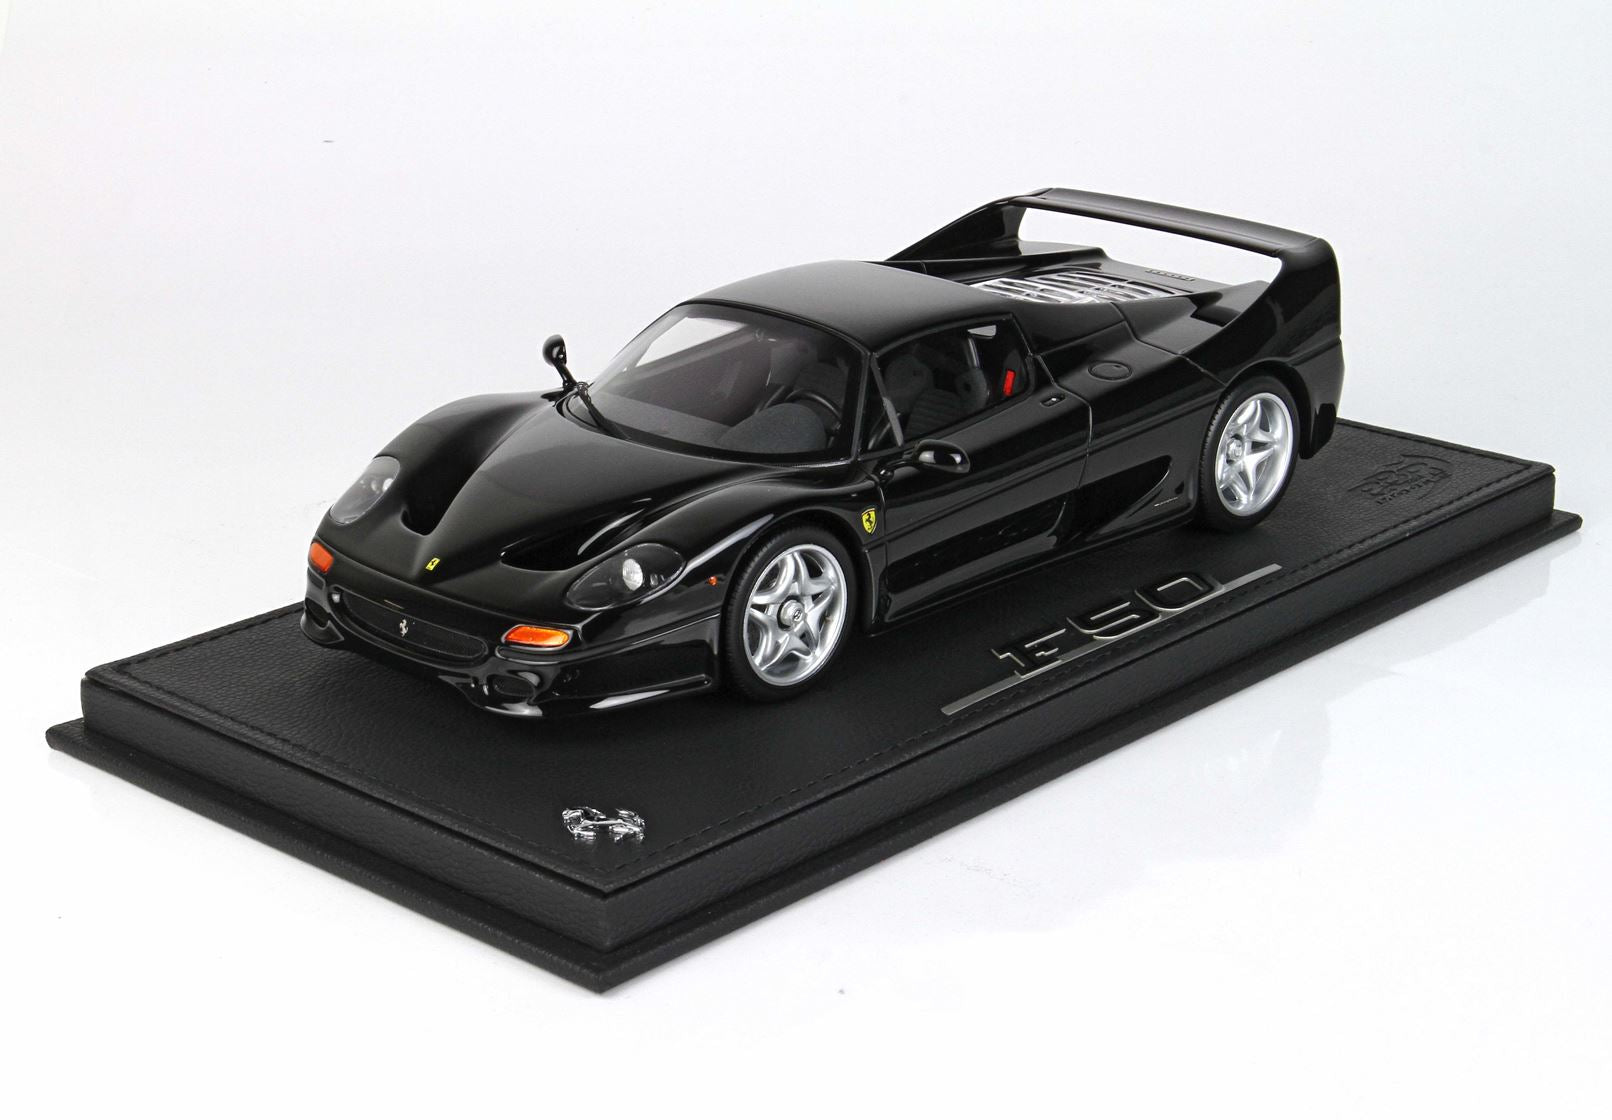 BBR Ferrari F50 1:18 scale Black